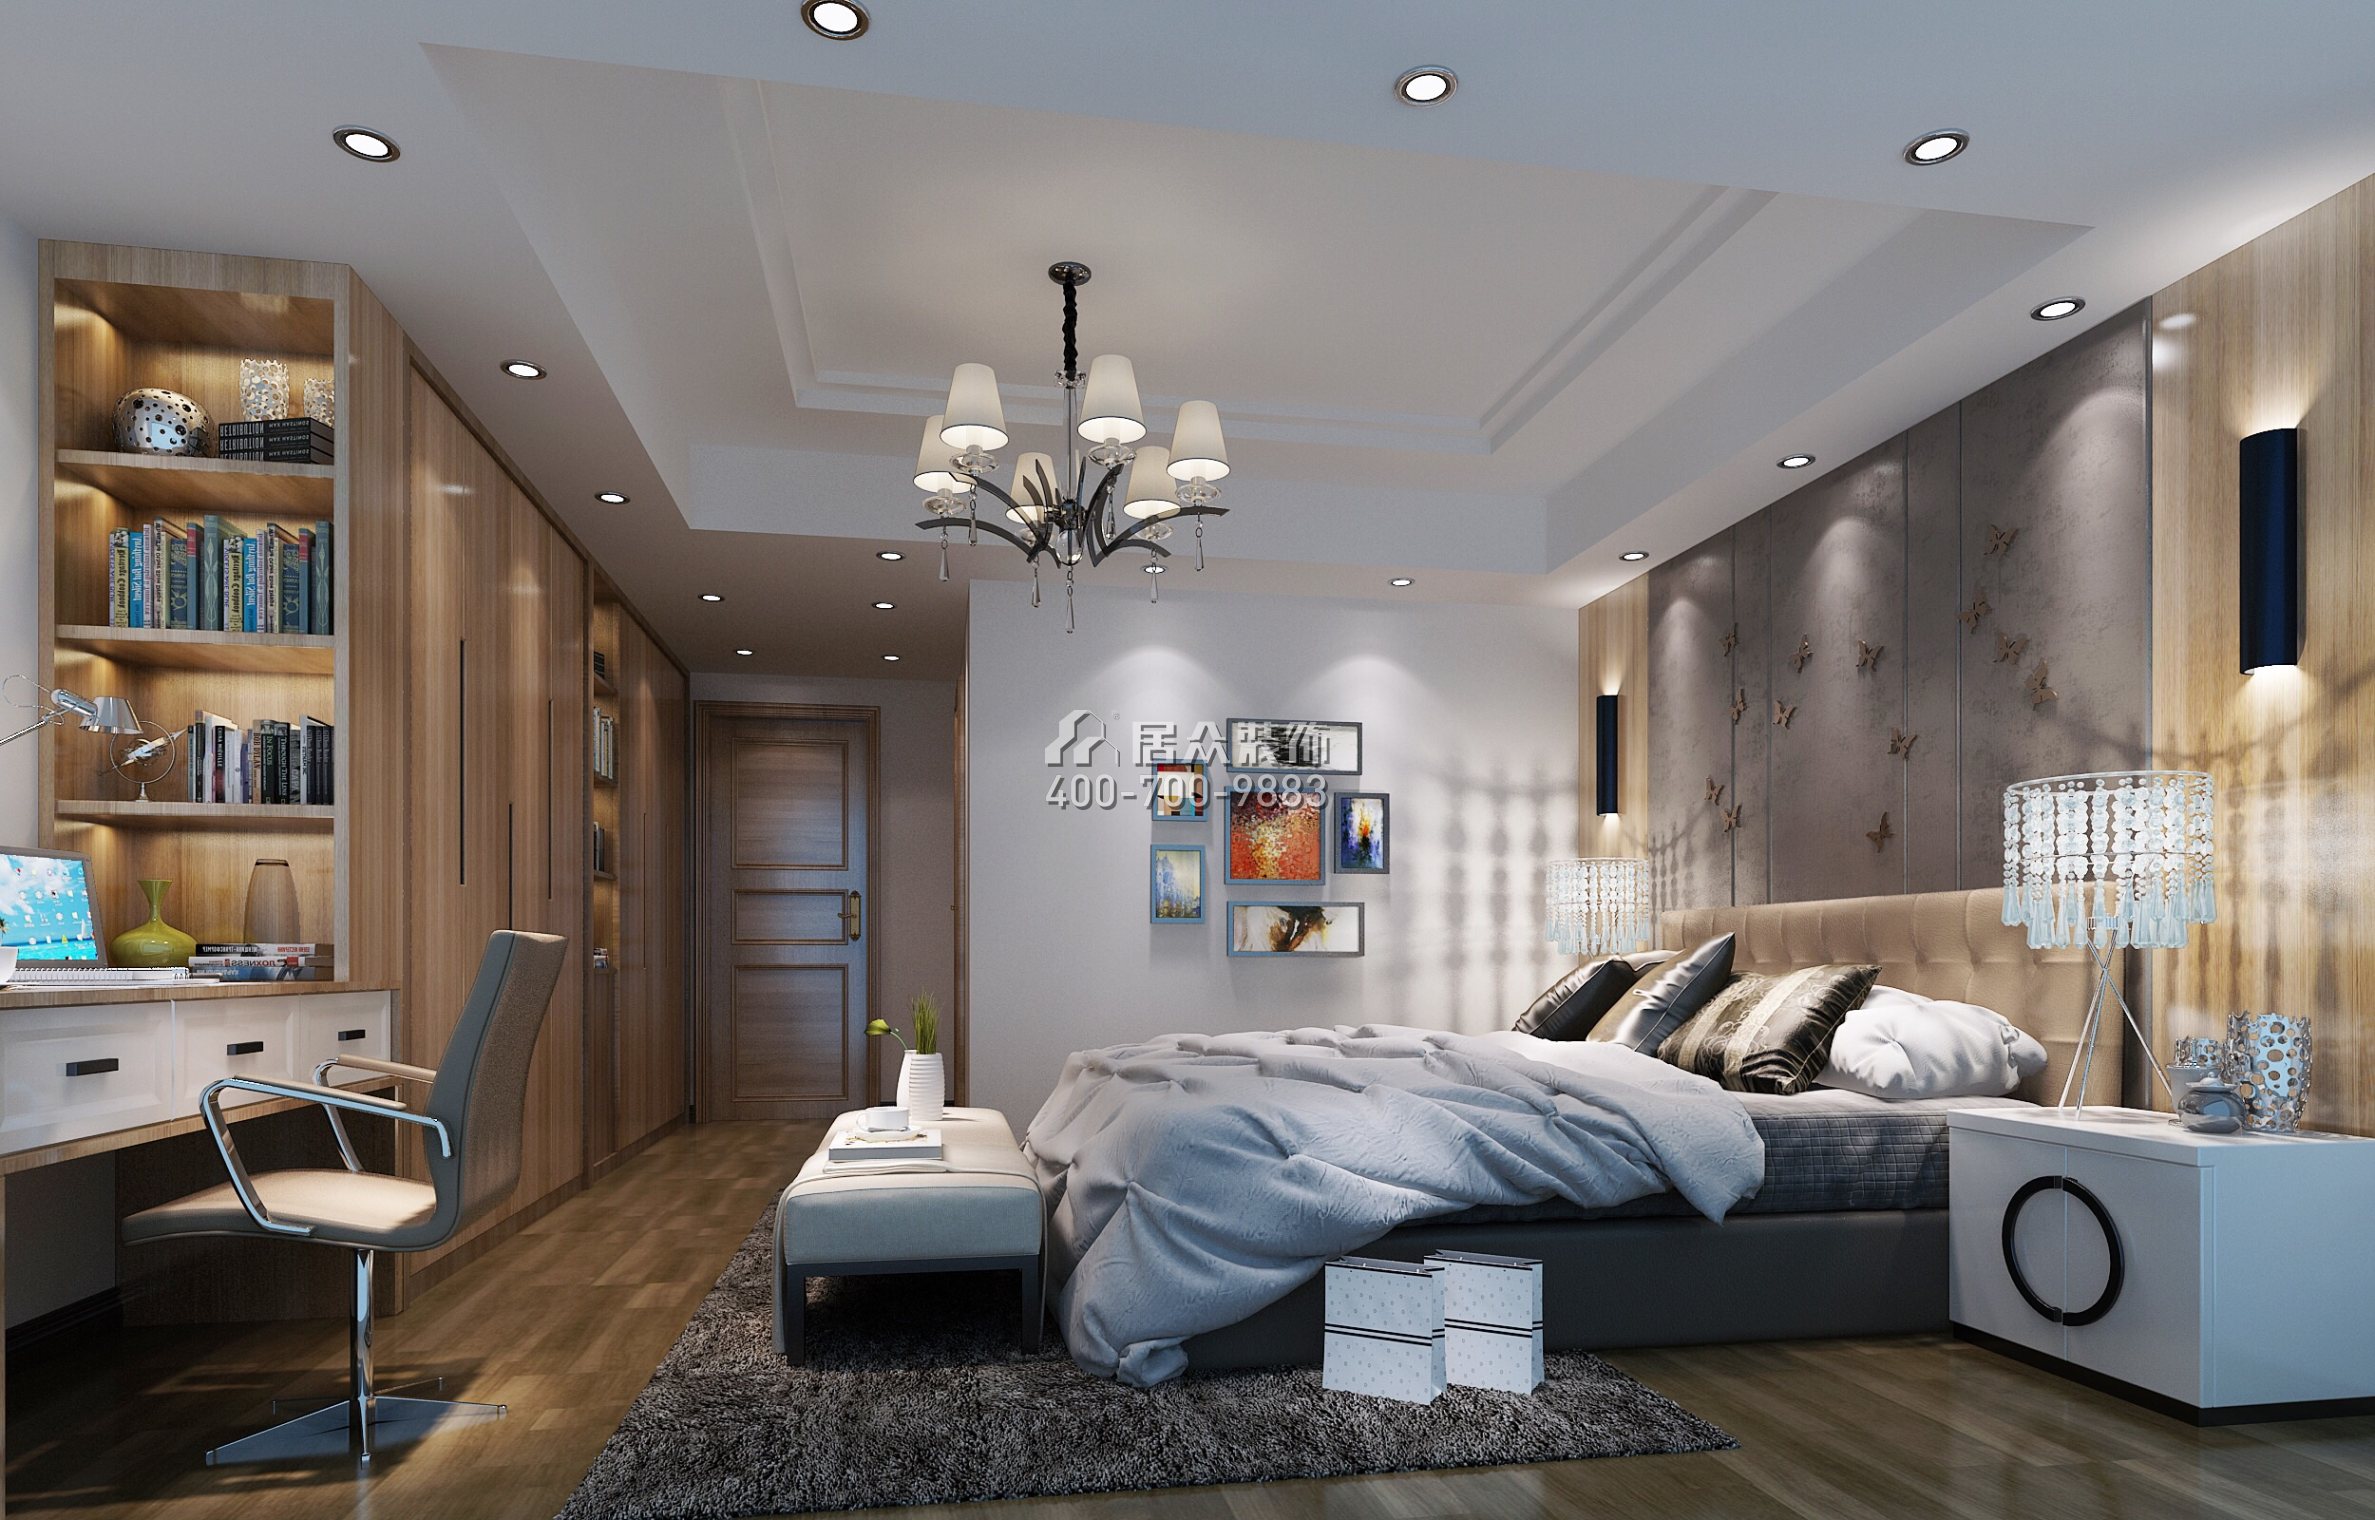 博林天瑞花园一期165平方米现代简约风格平层户型卧室装修效果图